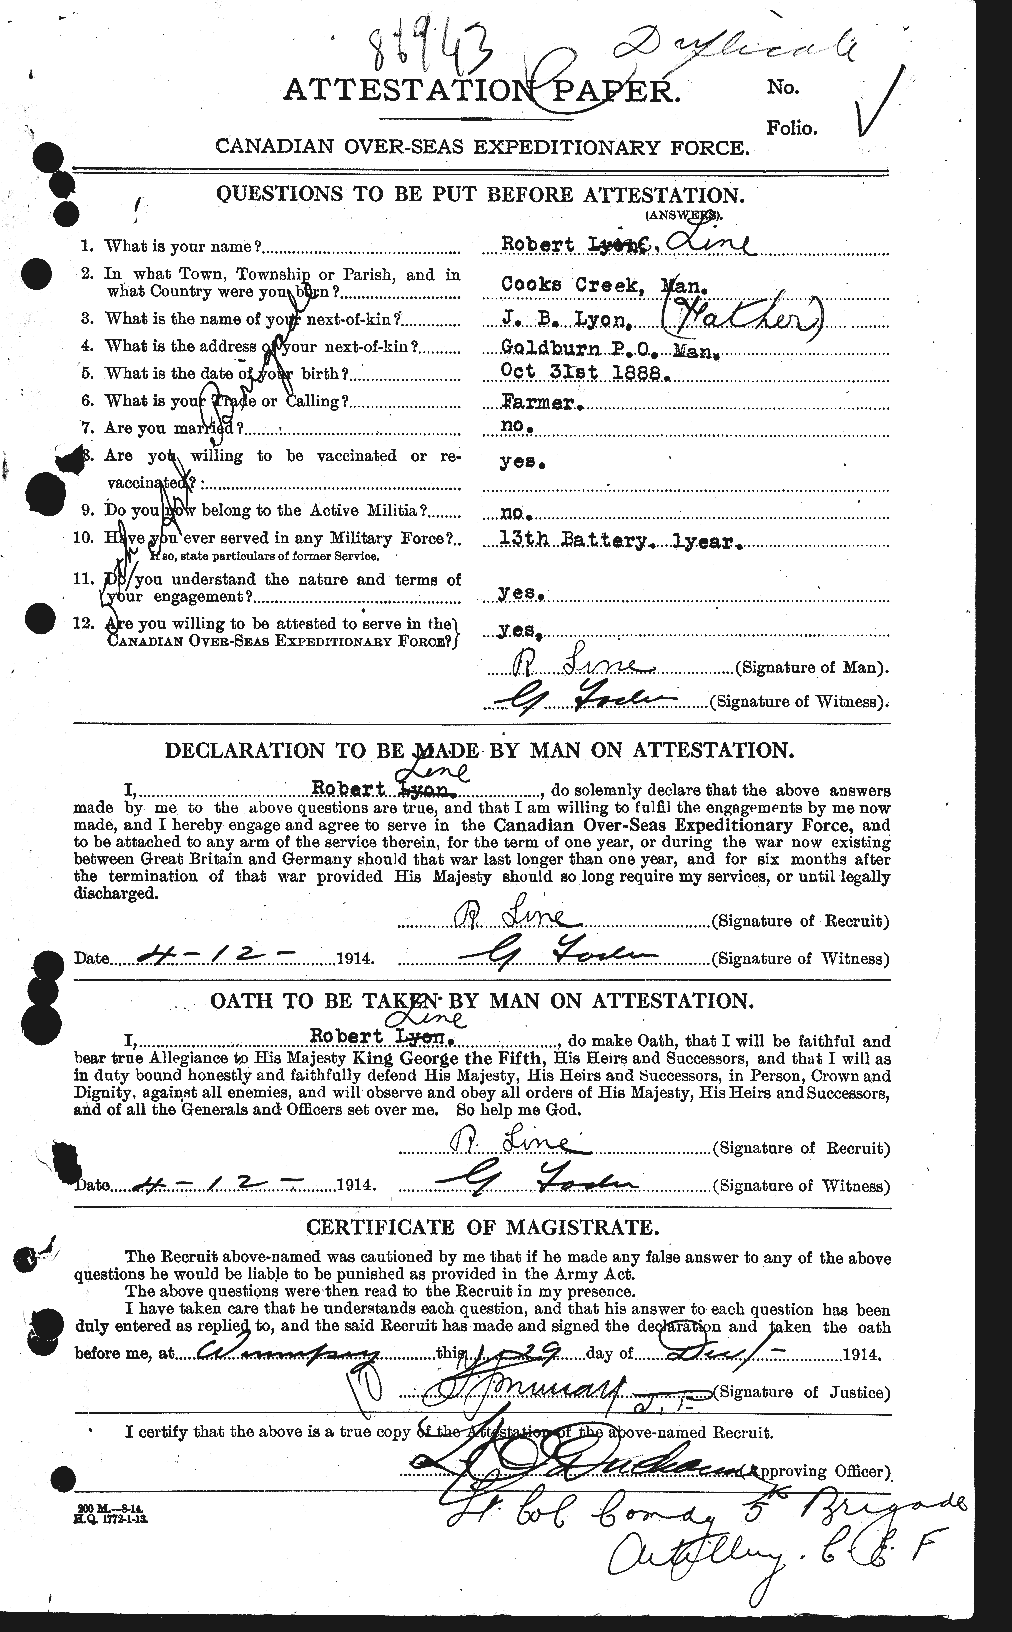 Dossiers du Personnel de la Première Guerre mondiale - CEC 466311a